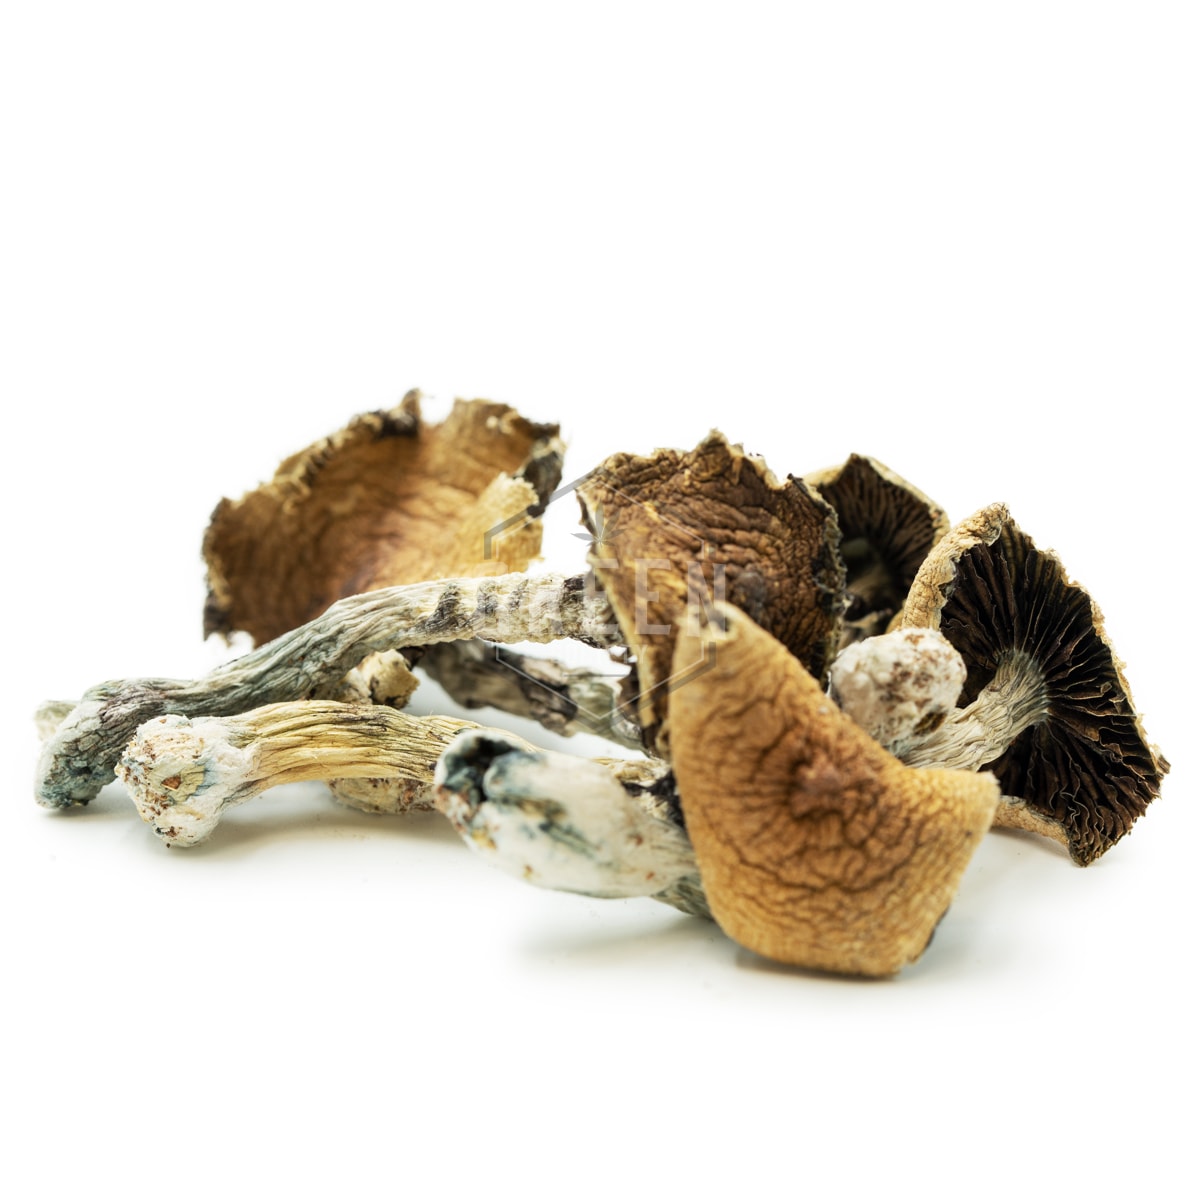 Buy Brazilian Cubensis Mushroom